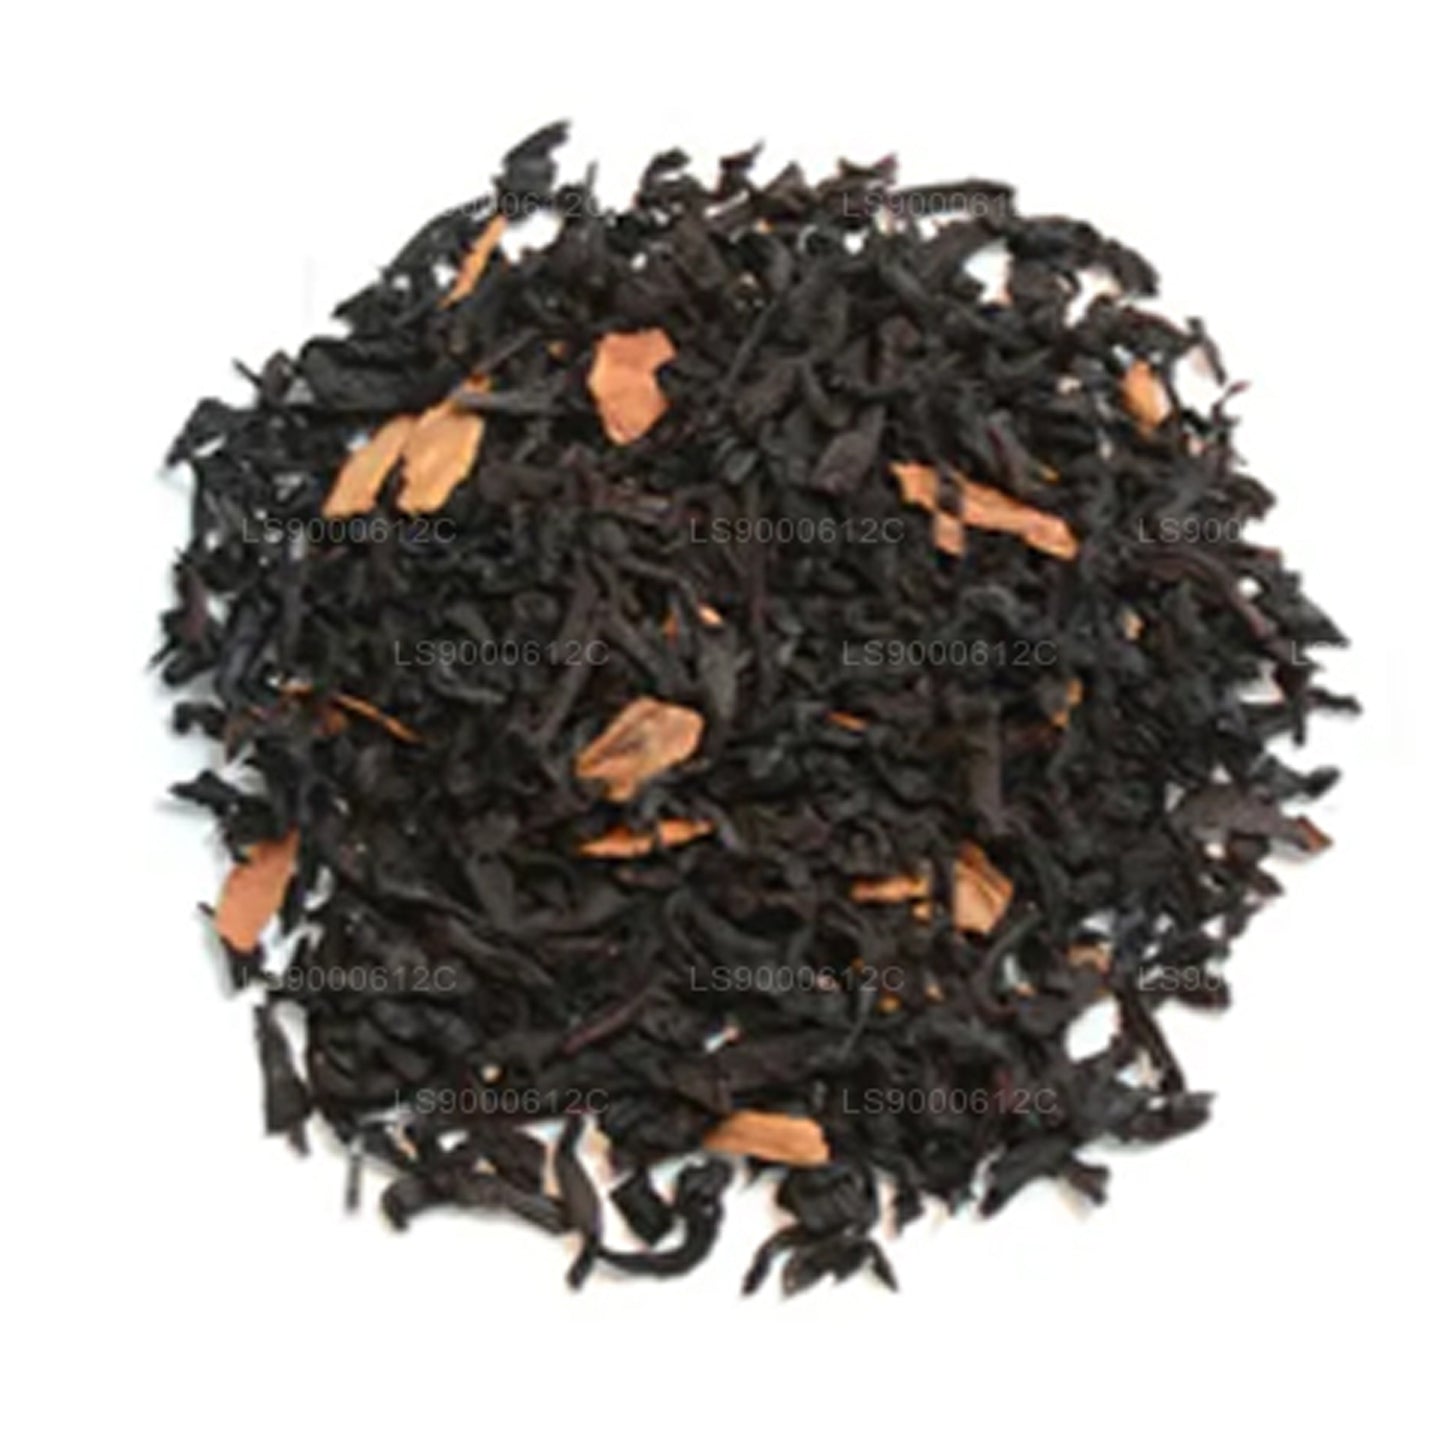 Jaf Tea Seasonal Cheer Black Tea Flavored With Caramel, Vanilla and Cinnamon Caddy (50g)